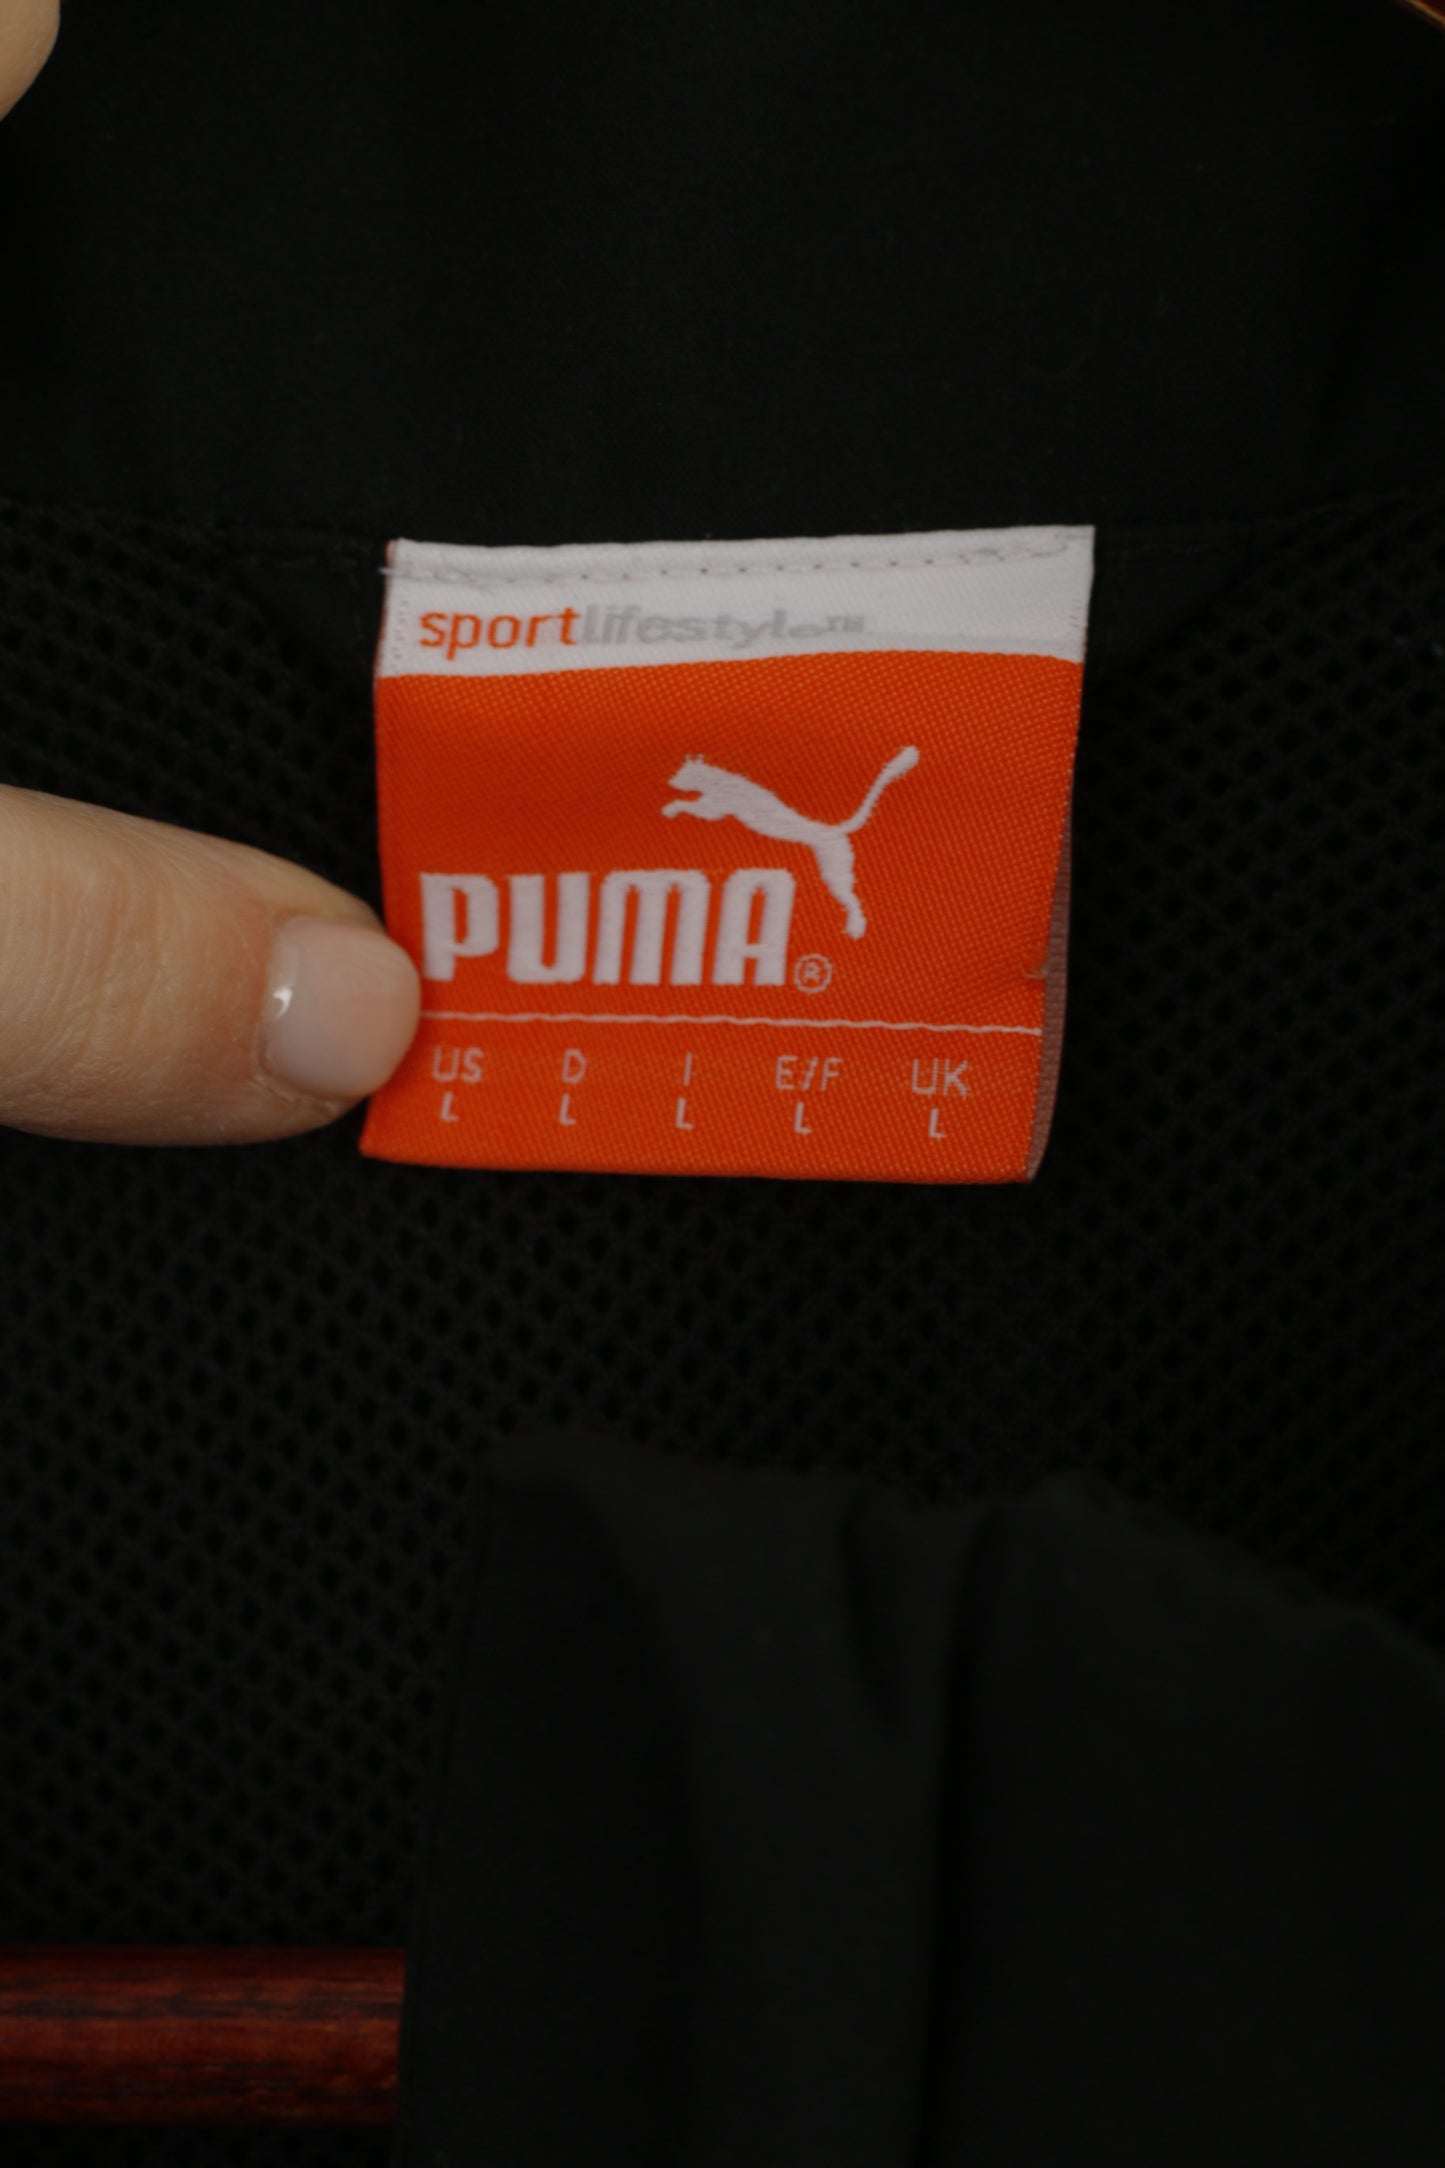 Puma Hommes L Veste Noir Blanc Activewear Fermeture Éclair Complète Sport Lifestyle Maille Doublée Haut